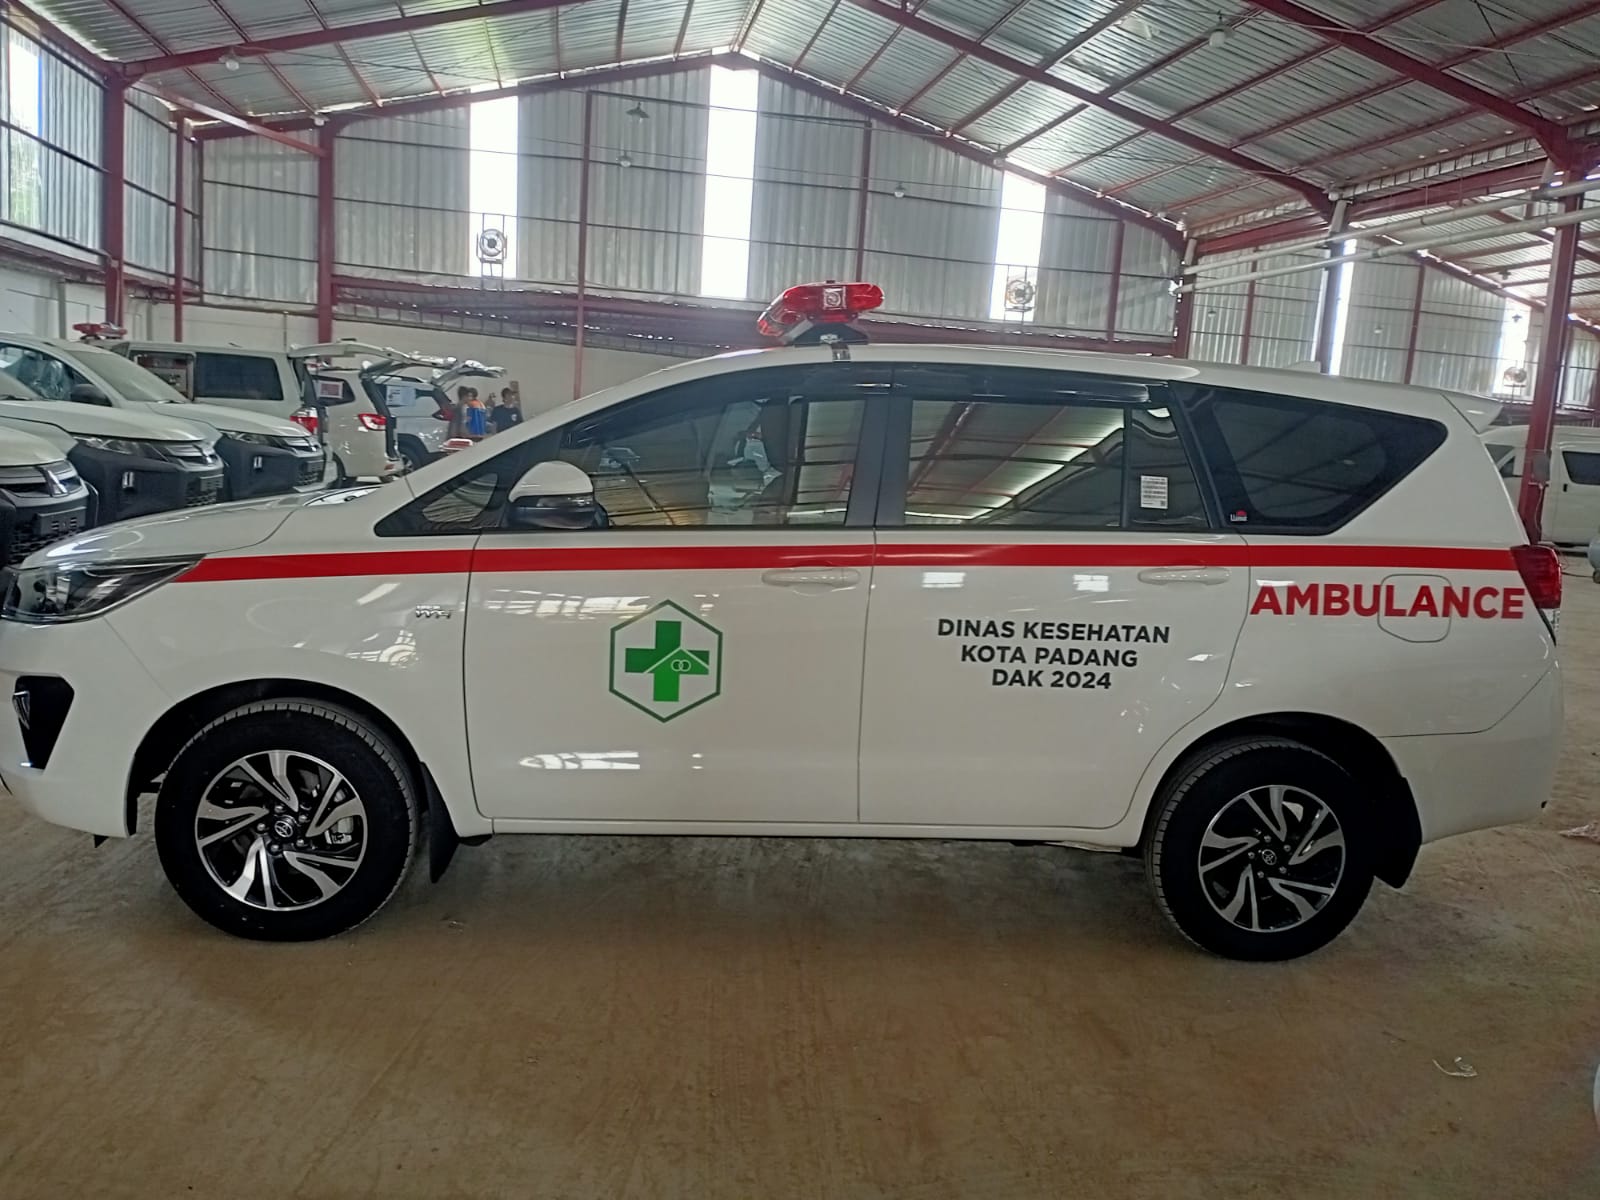 Harga Bengkel Karoseri Ambulance Berkualitas Pasuruan